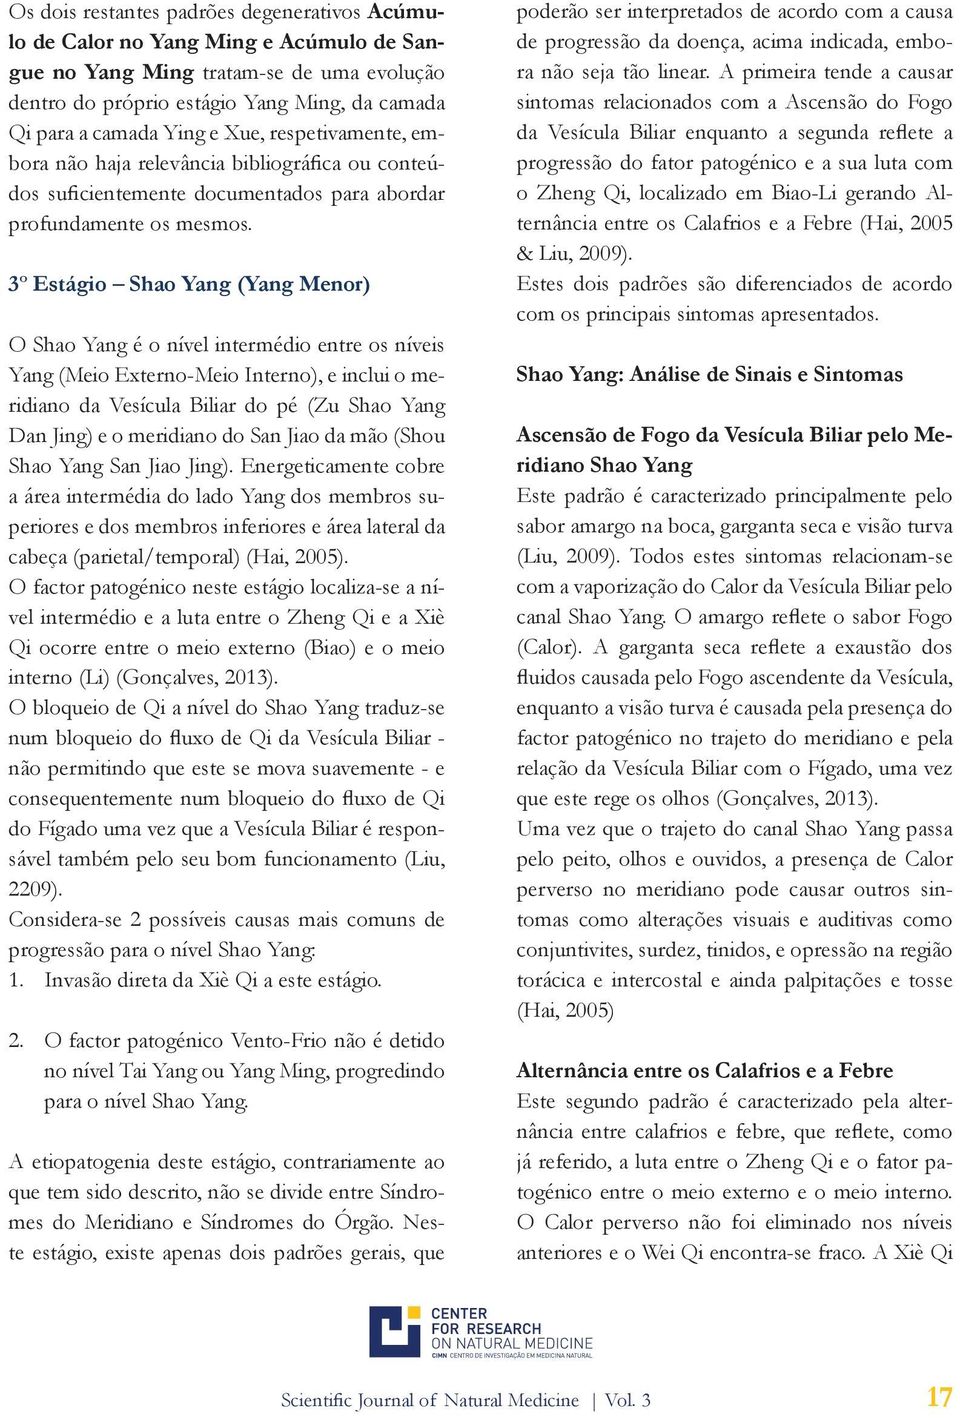 3º Estágio Shao Yang (Yang Menor) O Shao Yang é o nível intermédio entre os níveis Yang (Meio Externo-Meio Interno), e inclui o meridiano da Vesícula Biliar do pé (Zu Shao Yang Dan Jing) e o